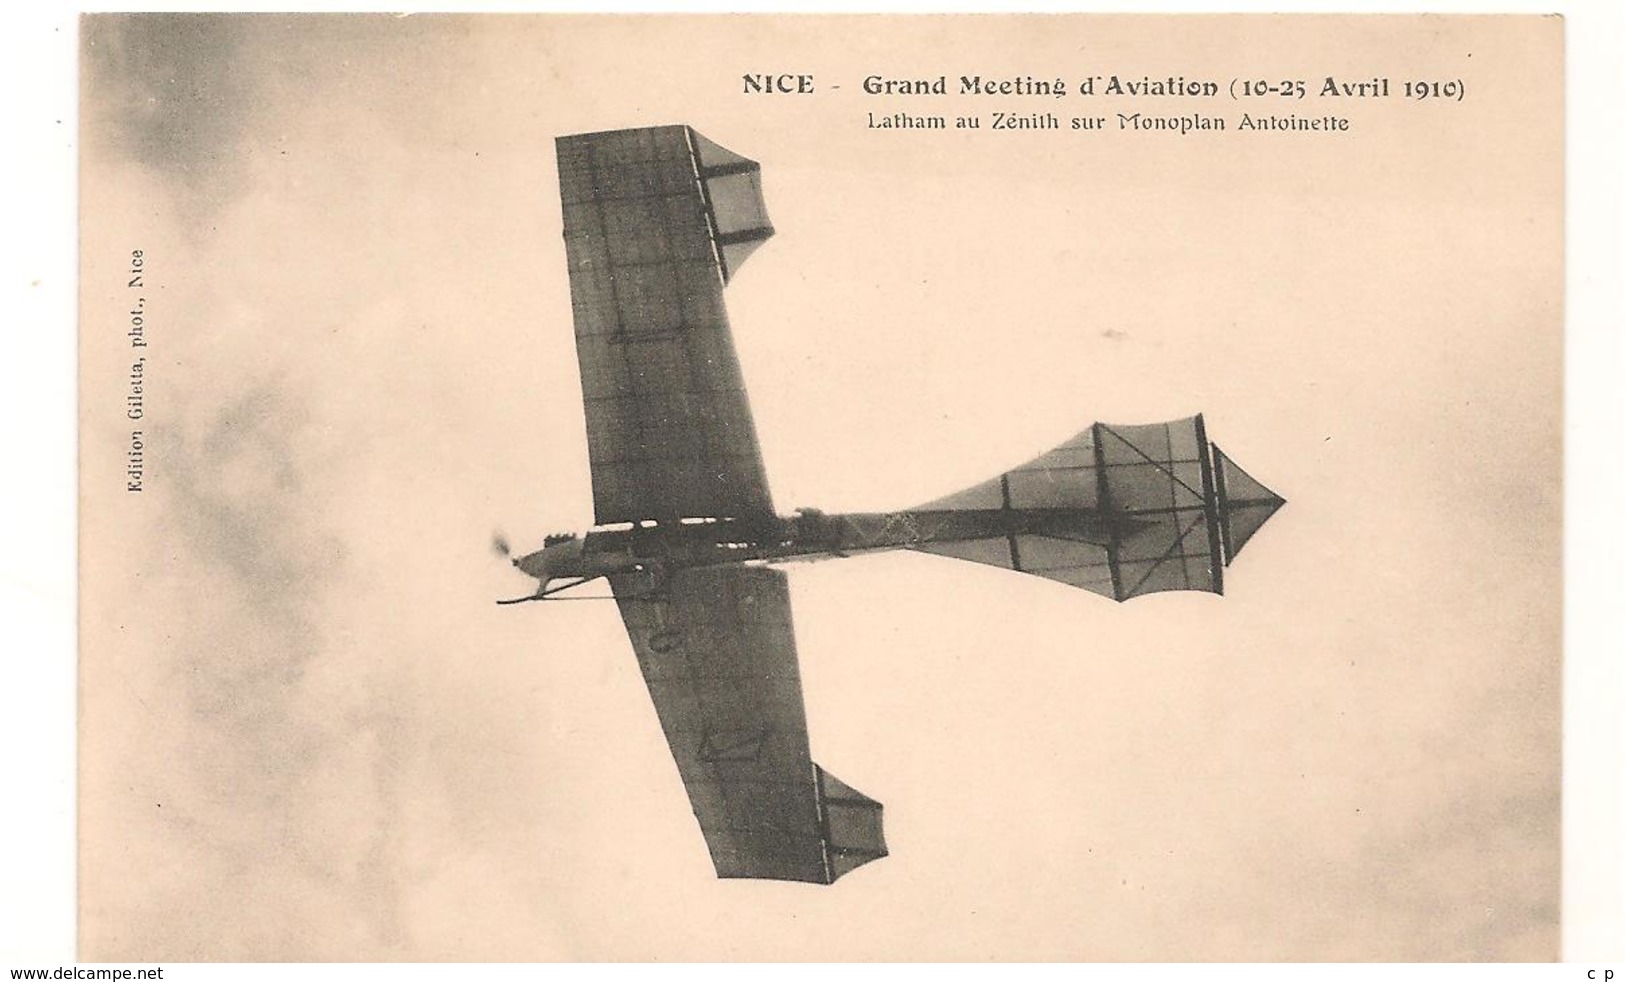 Nice - Grand Meeting D'Aviation -  Avril 1910 - Latham Au Zenith Sur Monoplan Antoinette -  CPA° - Transport Aérien - Aéroport